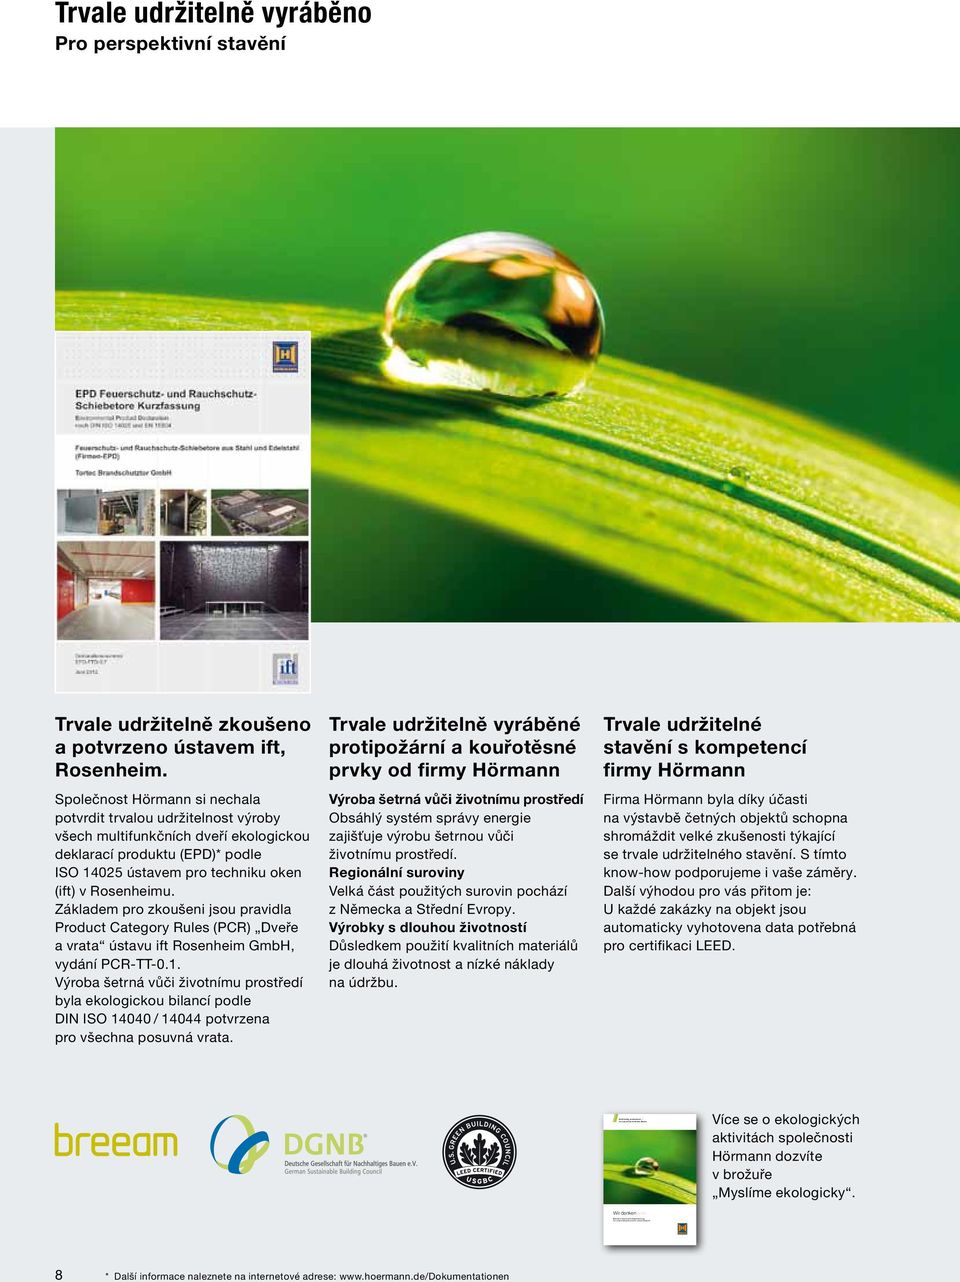 Společnost Hörmann si nechala potvrdit trvalou udržitelnost výroby všech multifunkčních dveří ekologickou deklarací produktu (EPD)* podle ISO 14025 ústavem pro techniku oken (ift) v Rosenheimu.